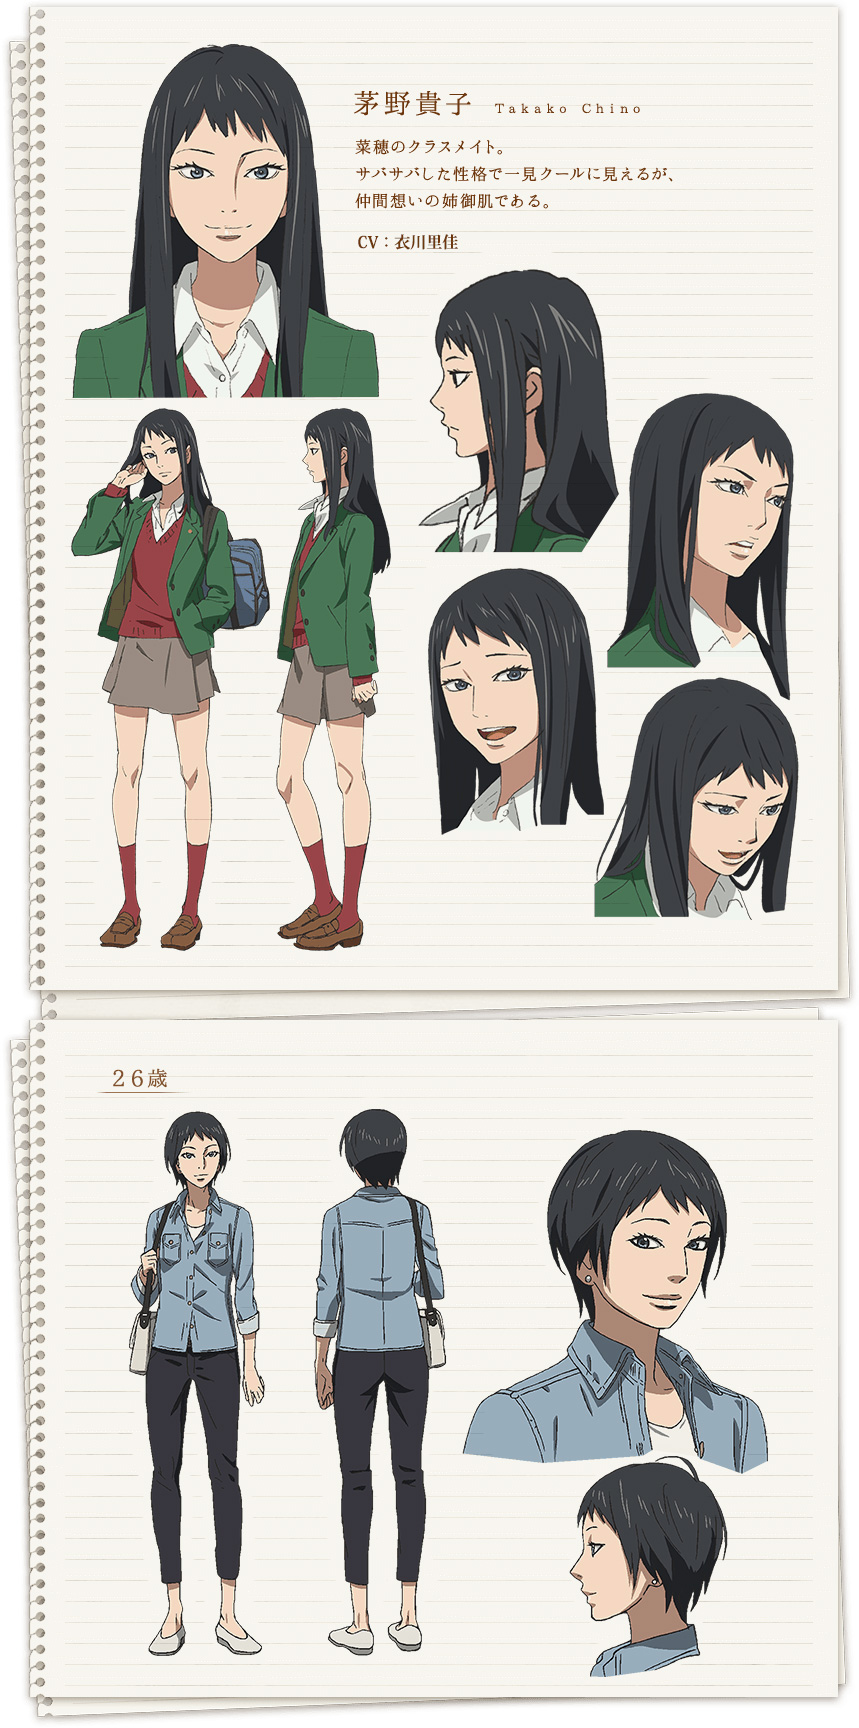 Orange-Anime-Character-Designs-Takako-Chino